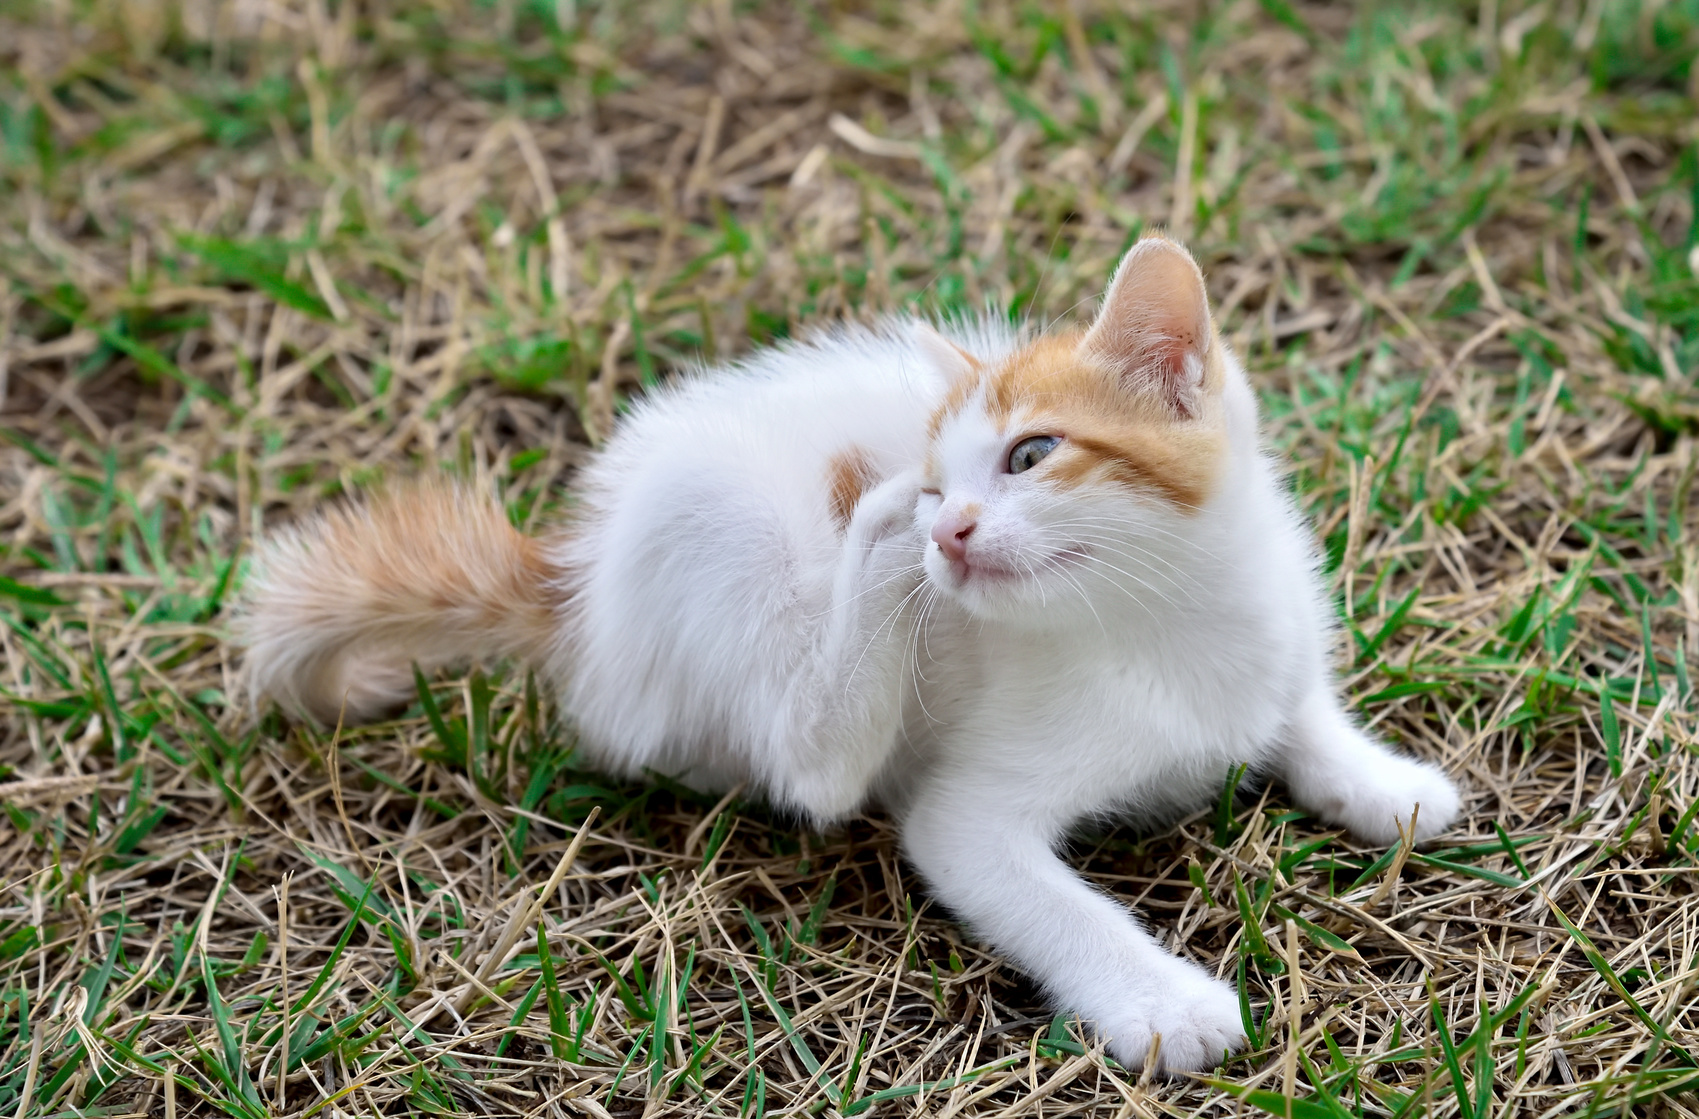 Vacht- en huidaandoeningen bij katten